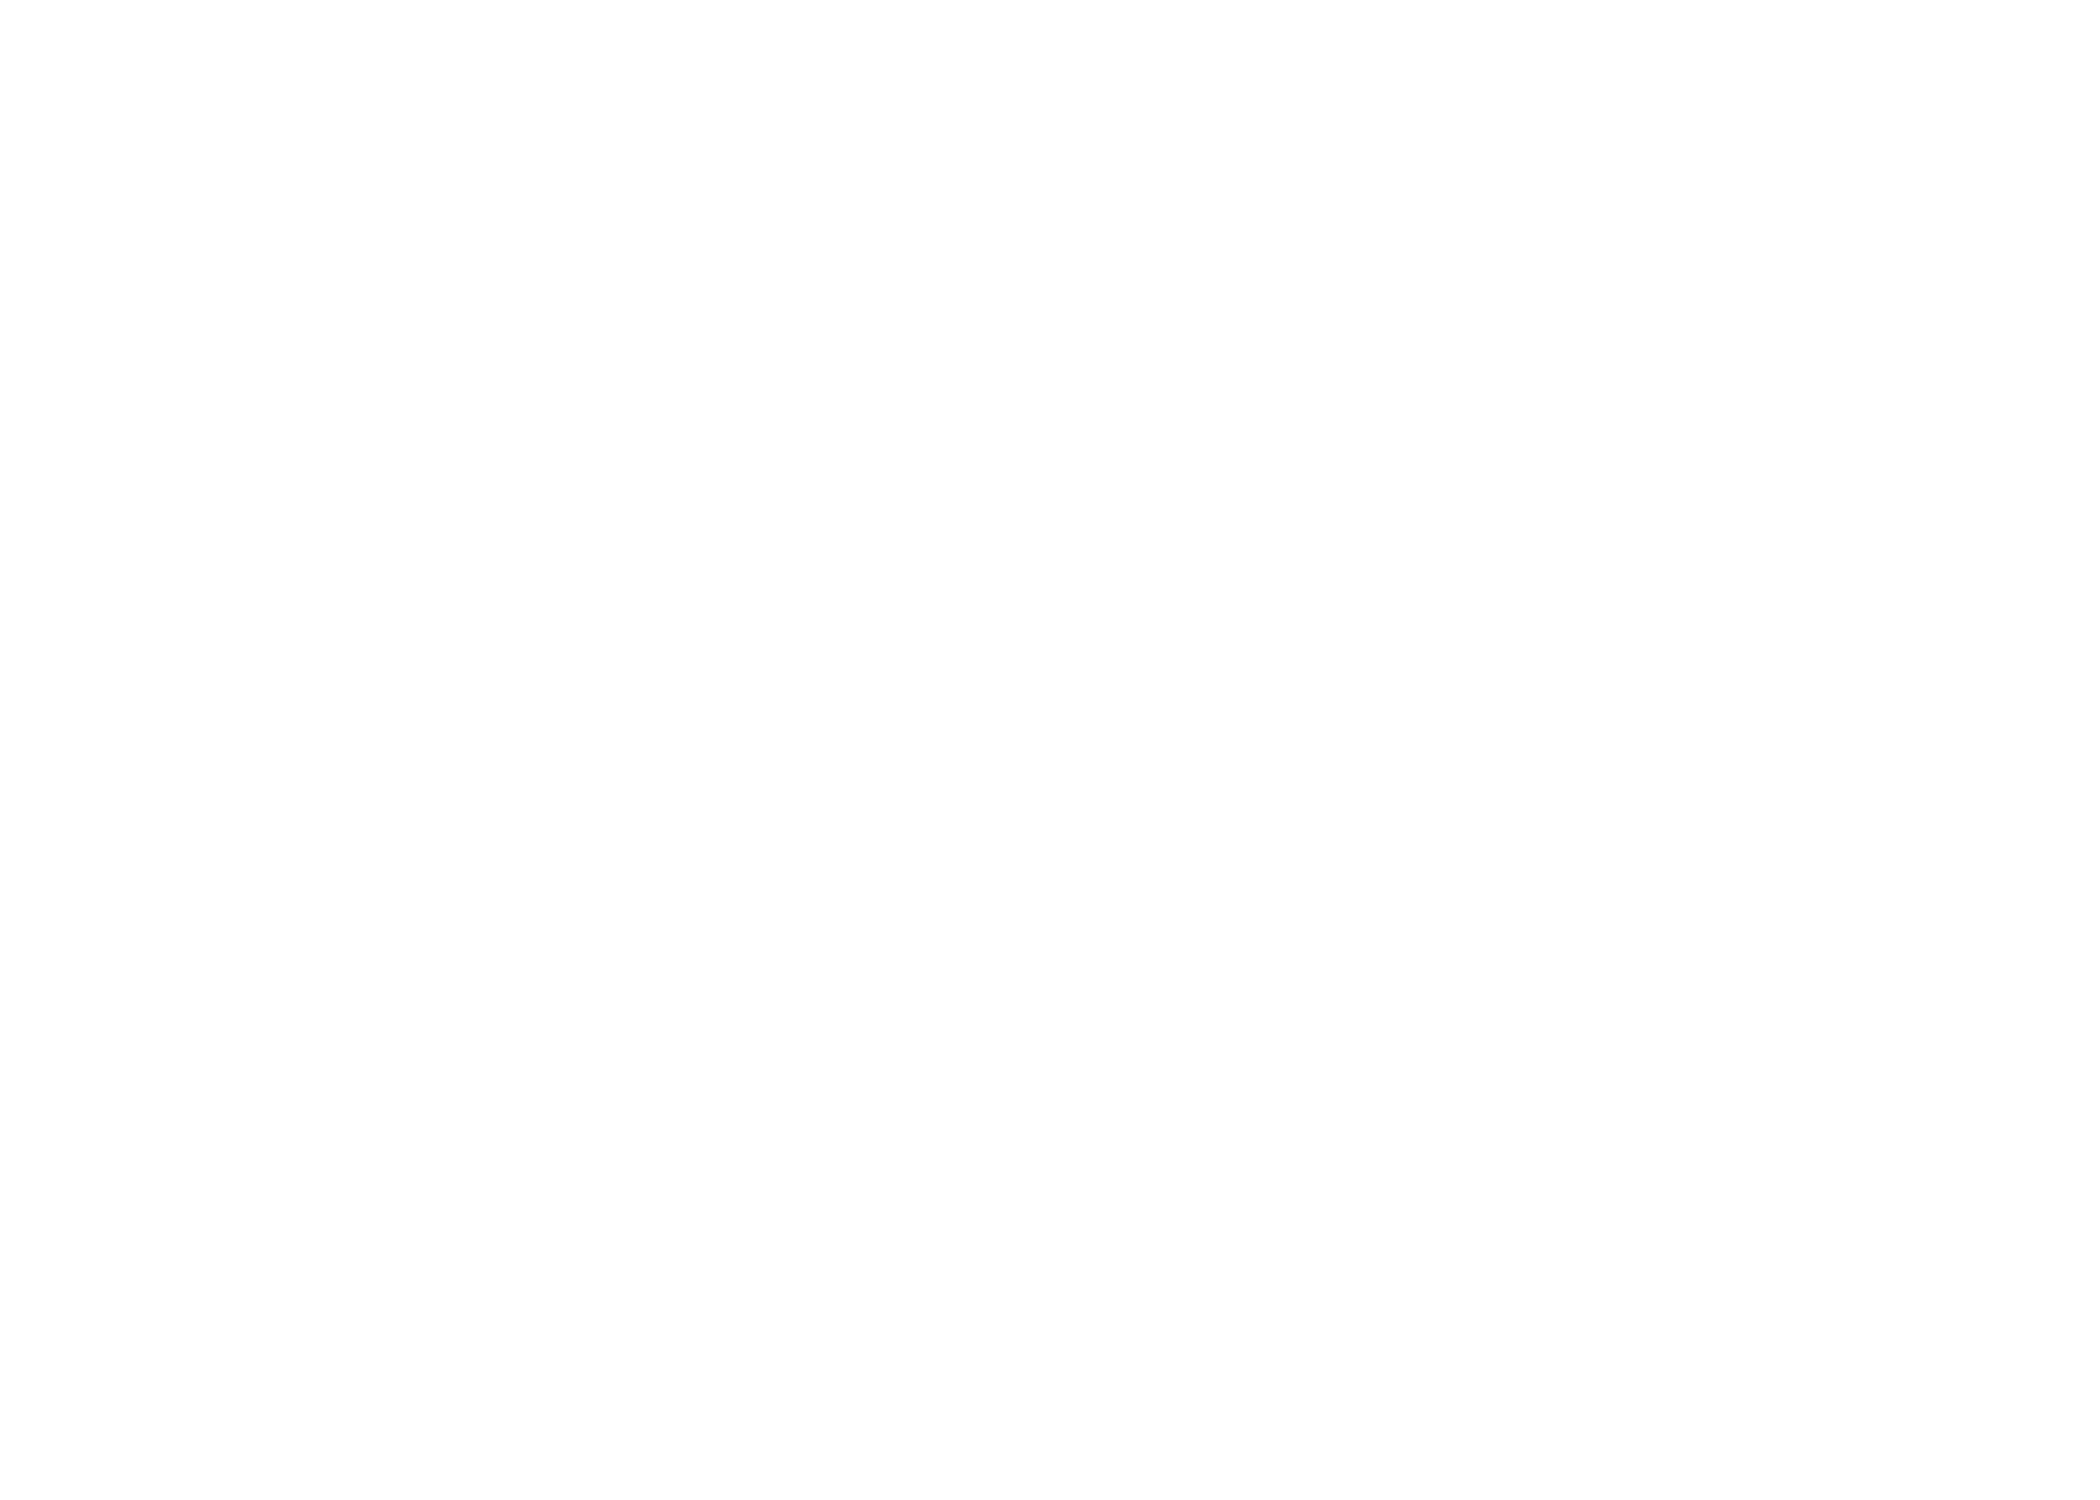 Major Minor Media